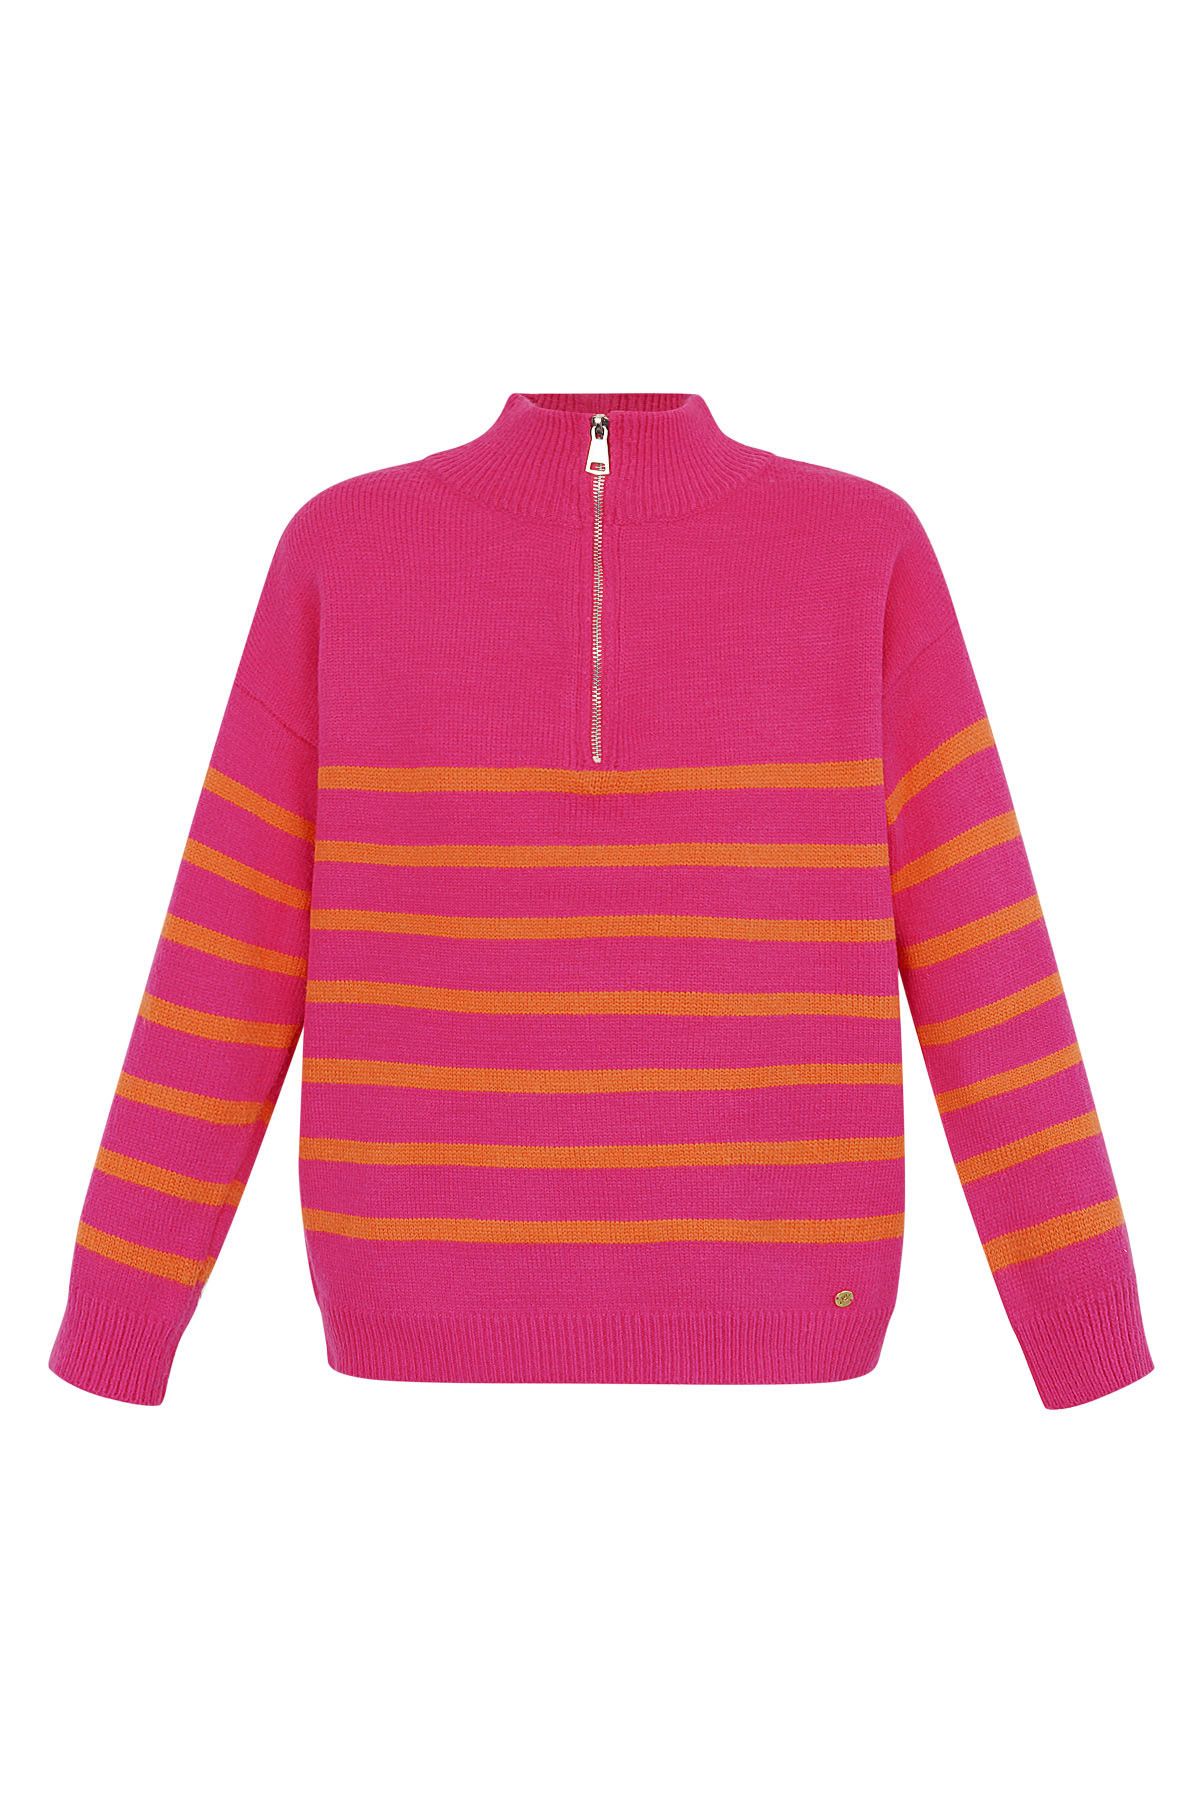 Gestrickter Pulloverstreifen mit Reißverschluss - rosa orange